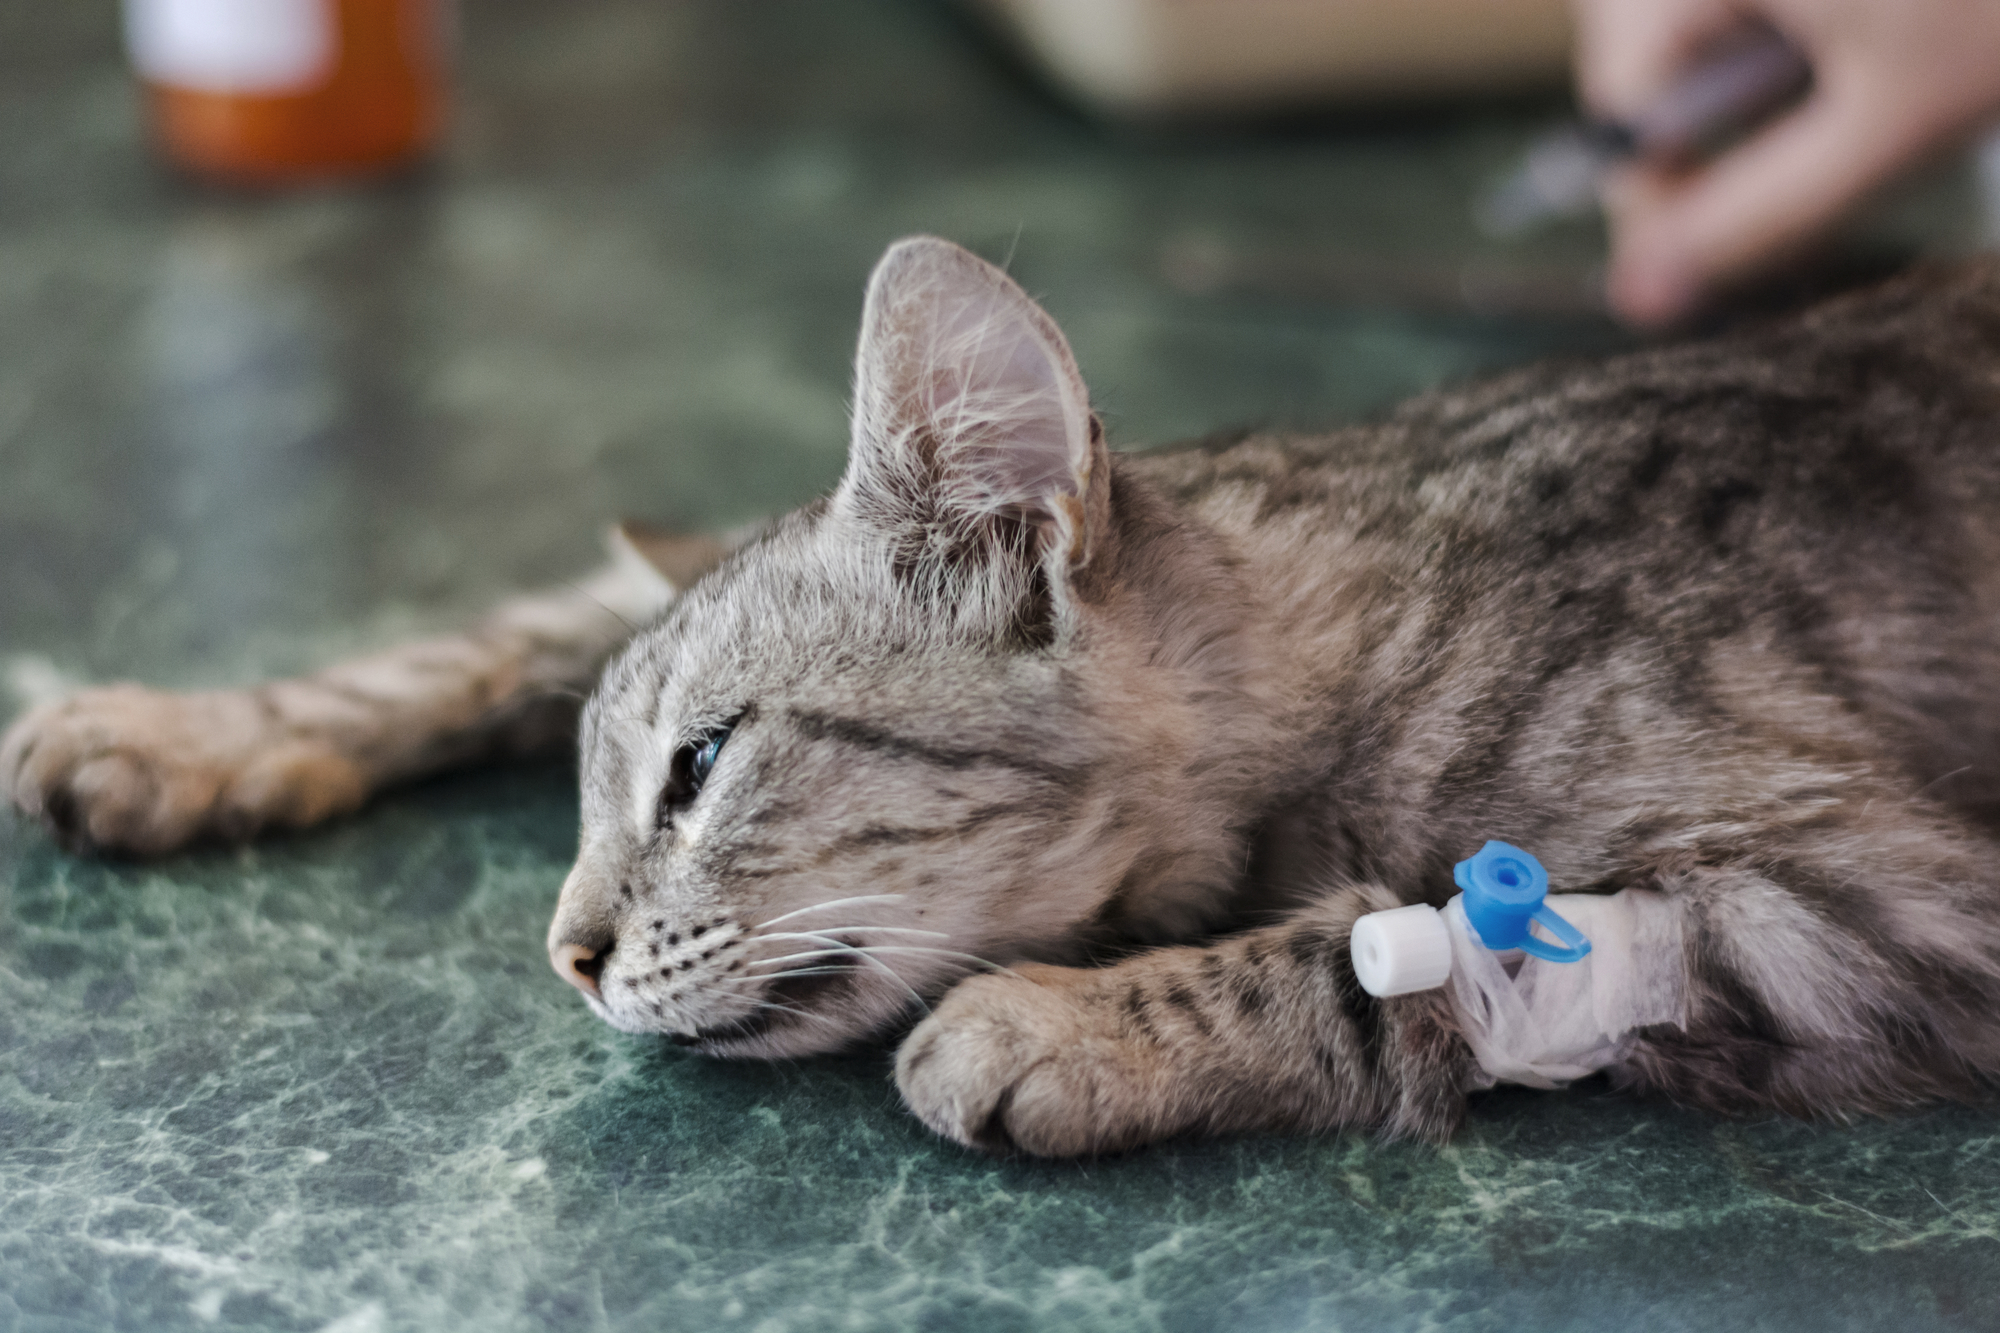 Mèo bị tiêu chảy không kiểm soát cần được đưa đến các cơ sở y tế thú y để kiểm tra